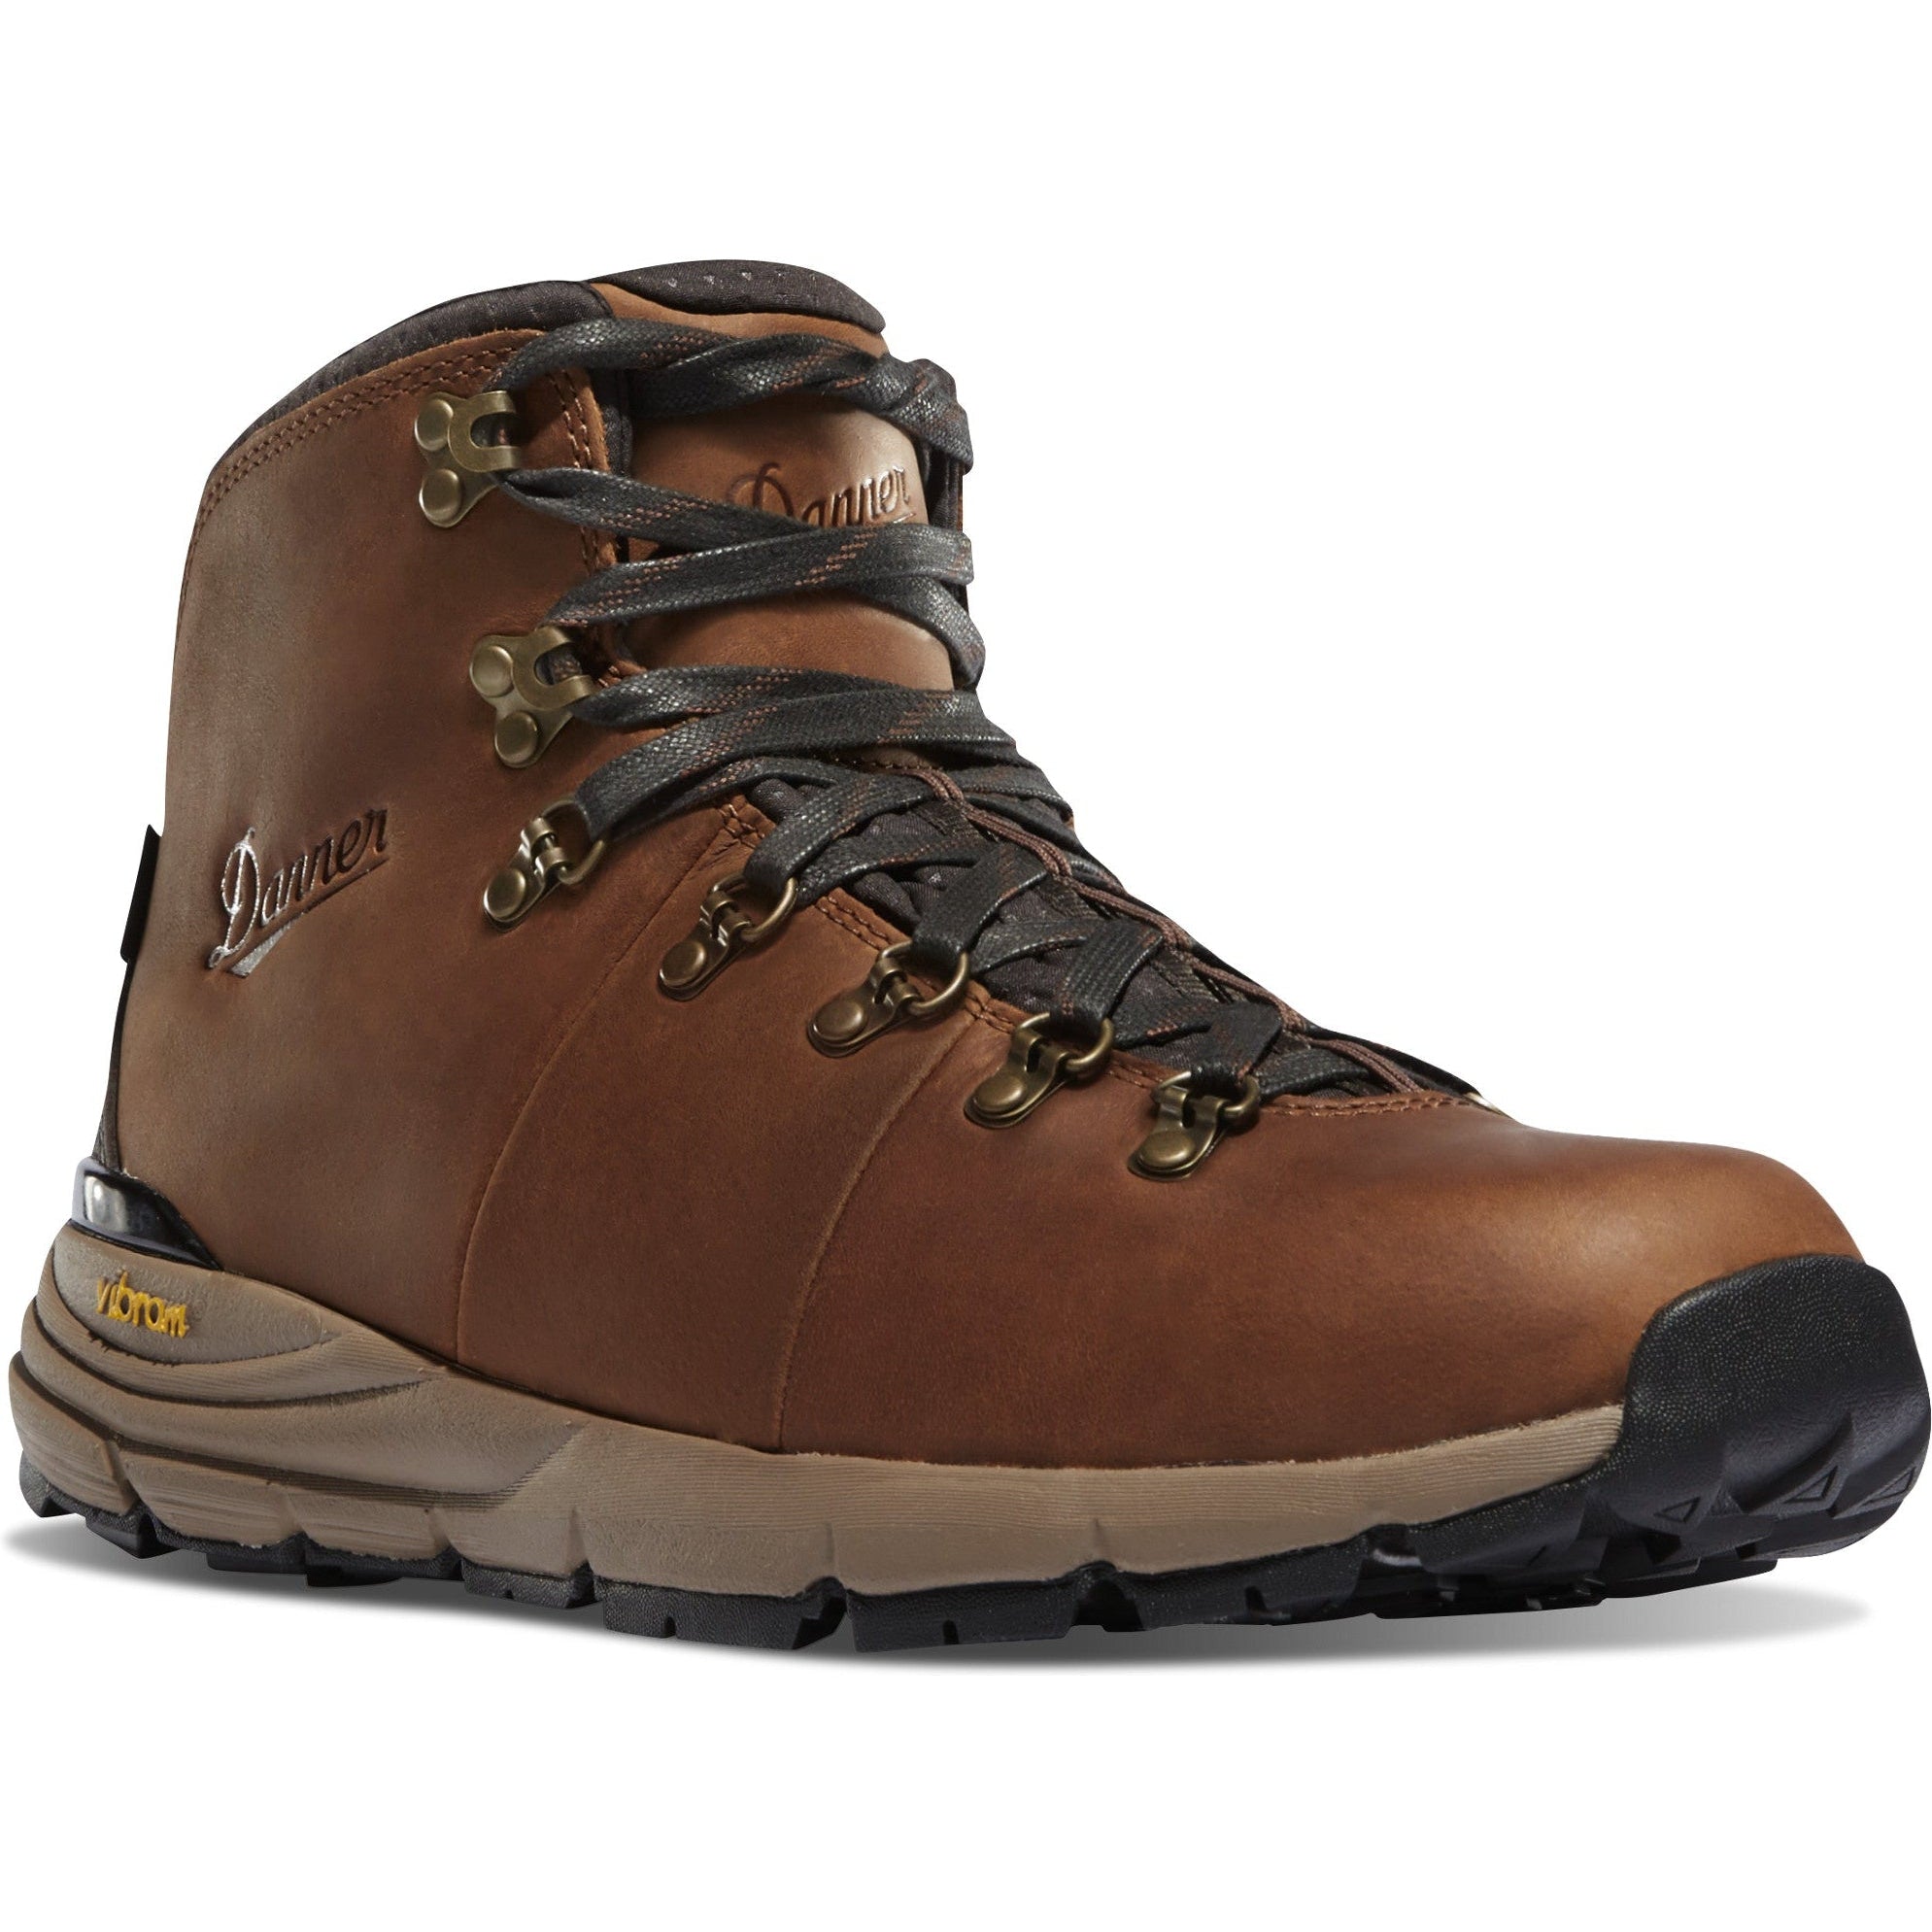 Danner Men's Mountain 600 4.5" WP Hiking Boot - Brown - 62250 7 / Medium / Brown - Overlook Boots